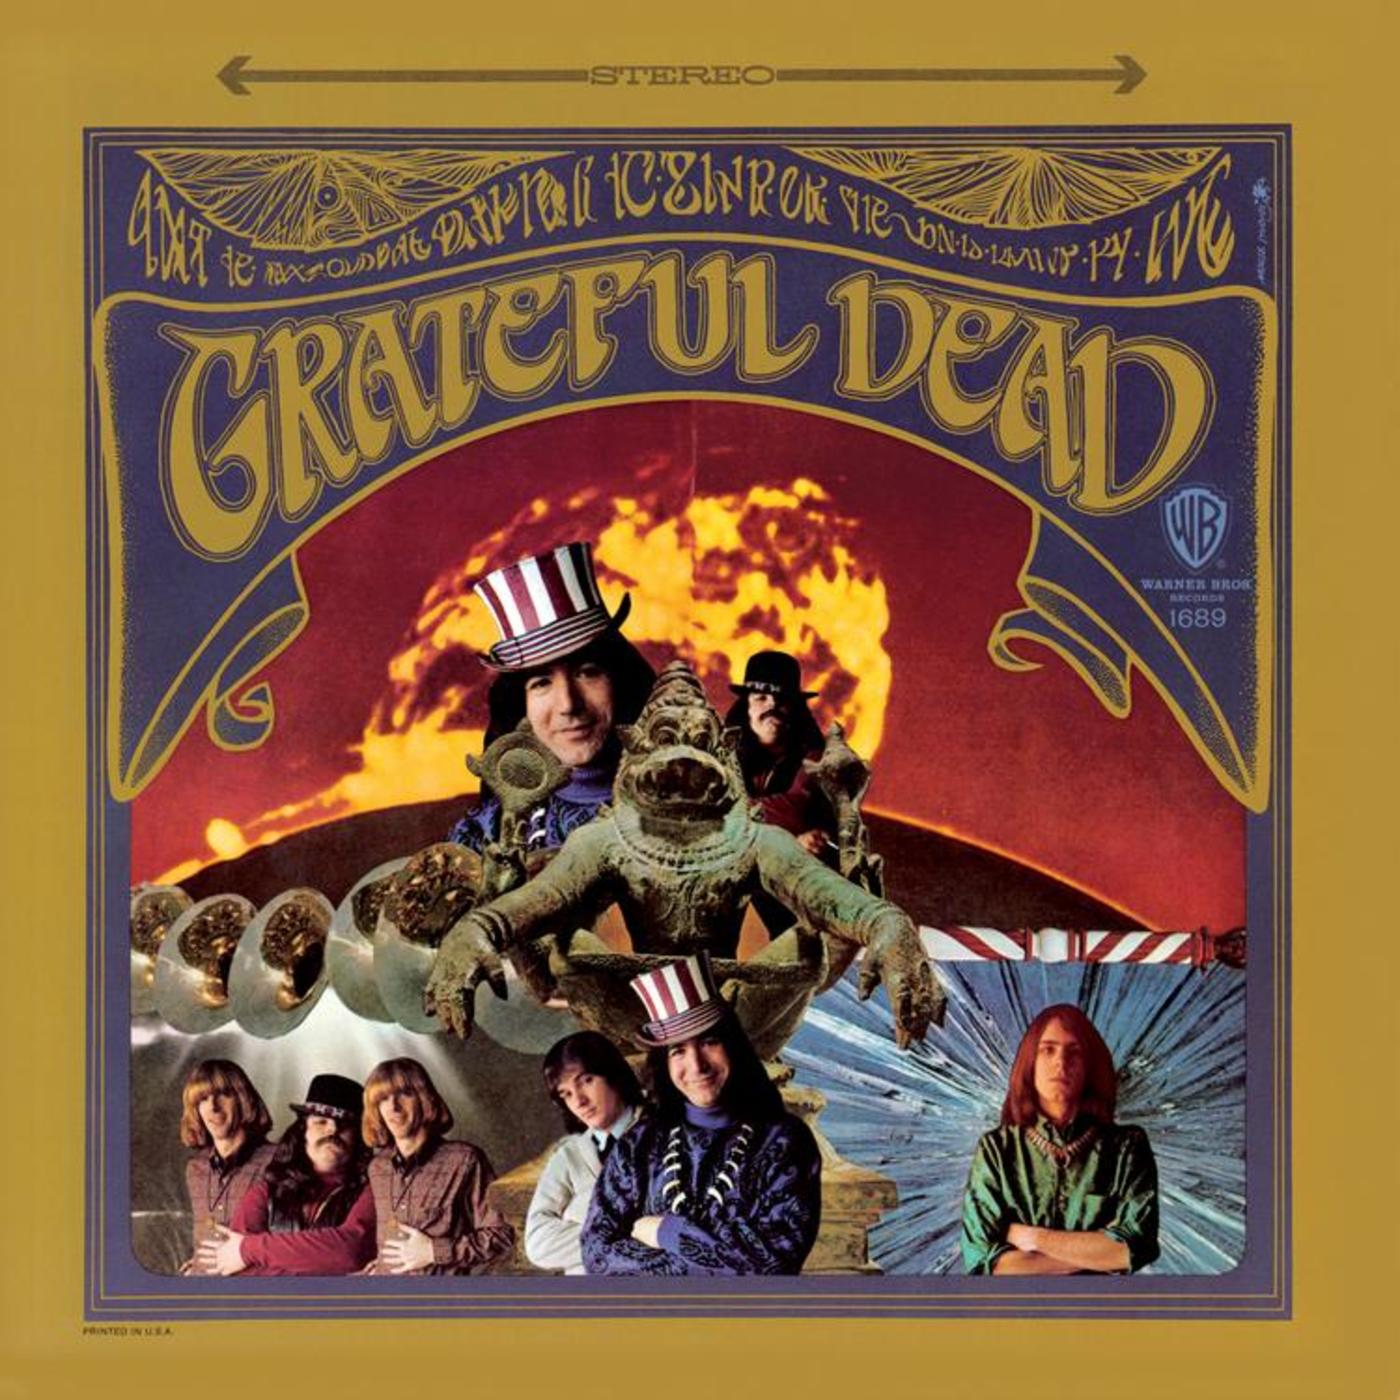 Grateful Dead The Grateful Dead 50th Anniversary Deluxe Edition Rhino